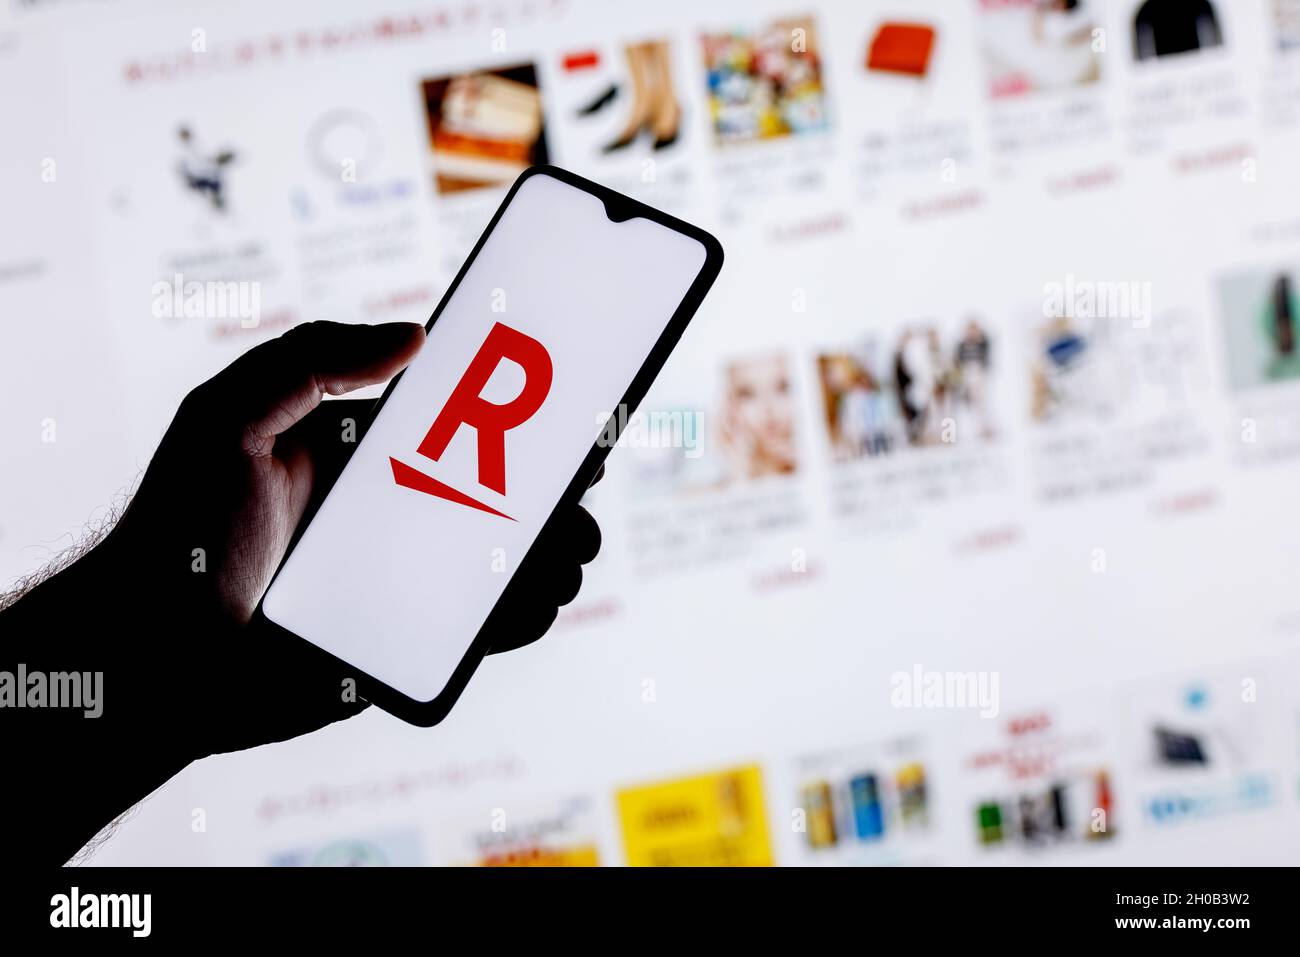 Rakuten Group è un'azienda giapponese di commercio elettronico e di vendita al dettaglio online. Uno smartphone con il logo Rakuten in una mano. Foto Stock